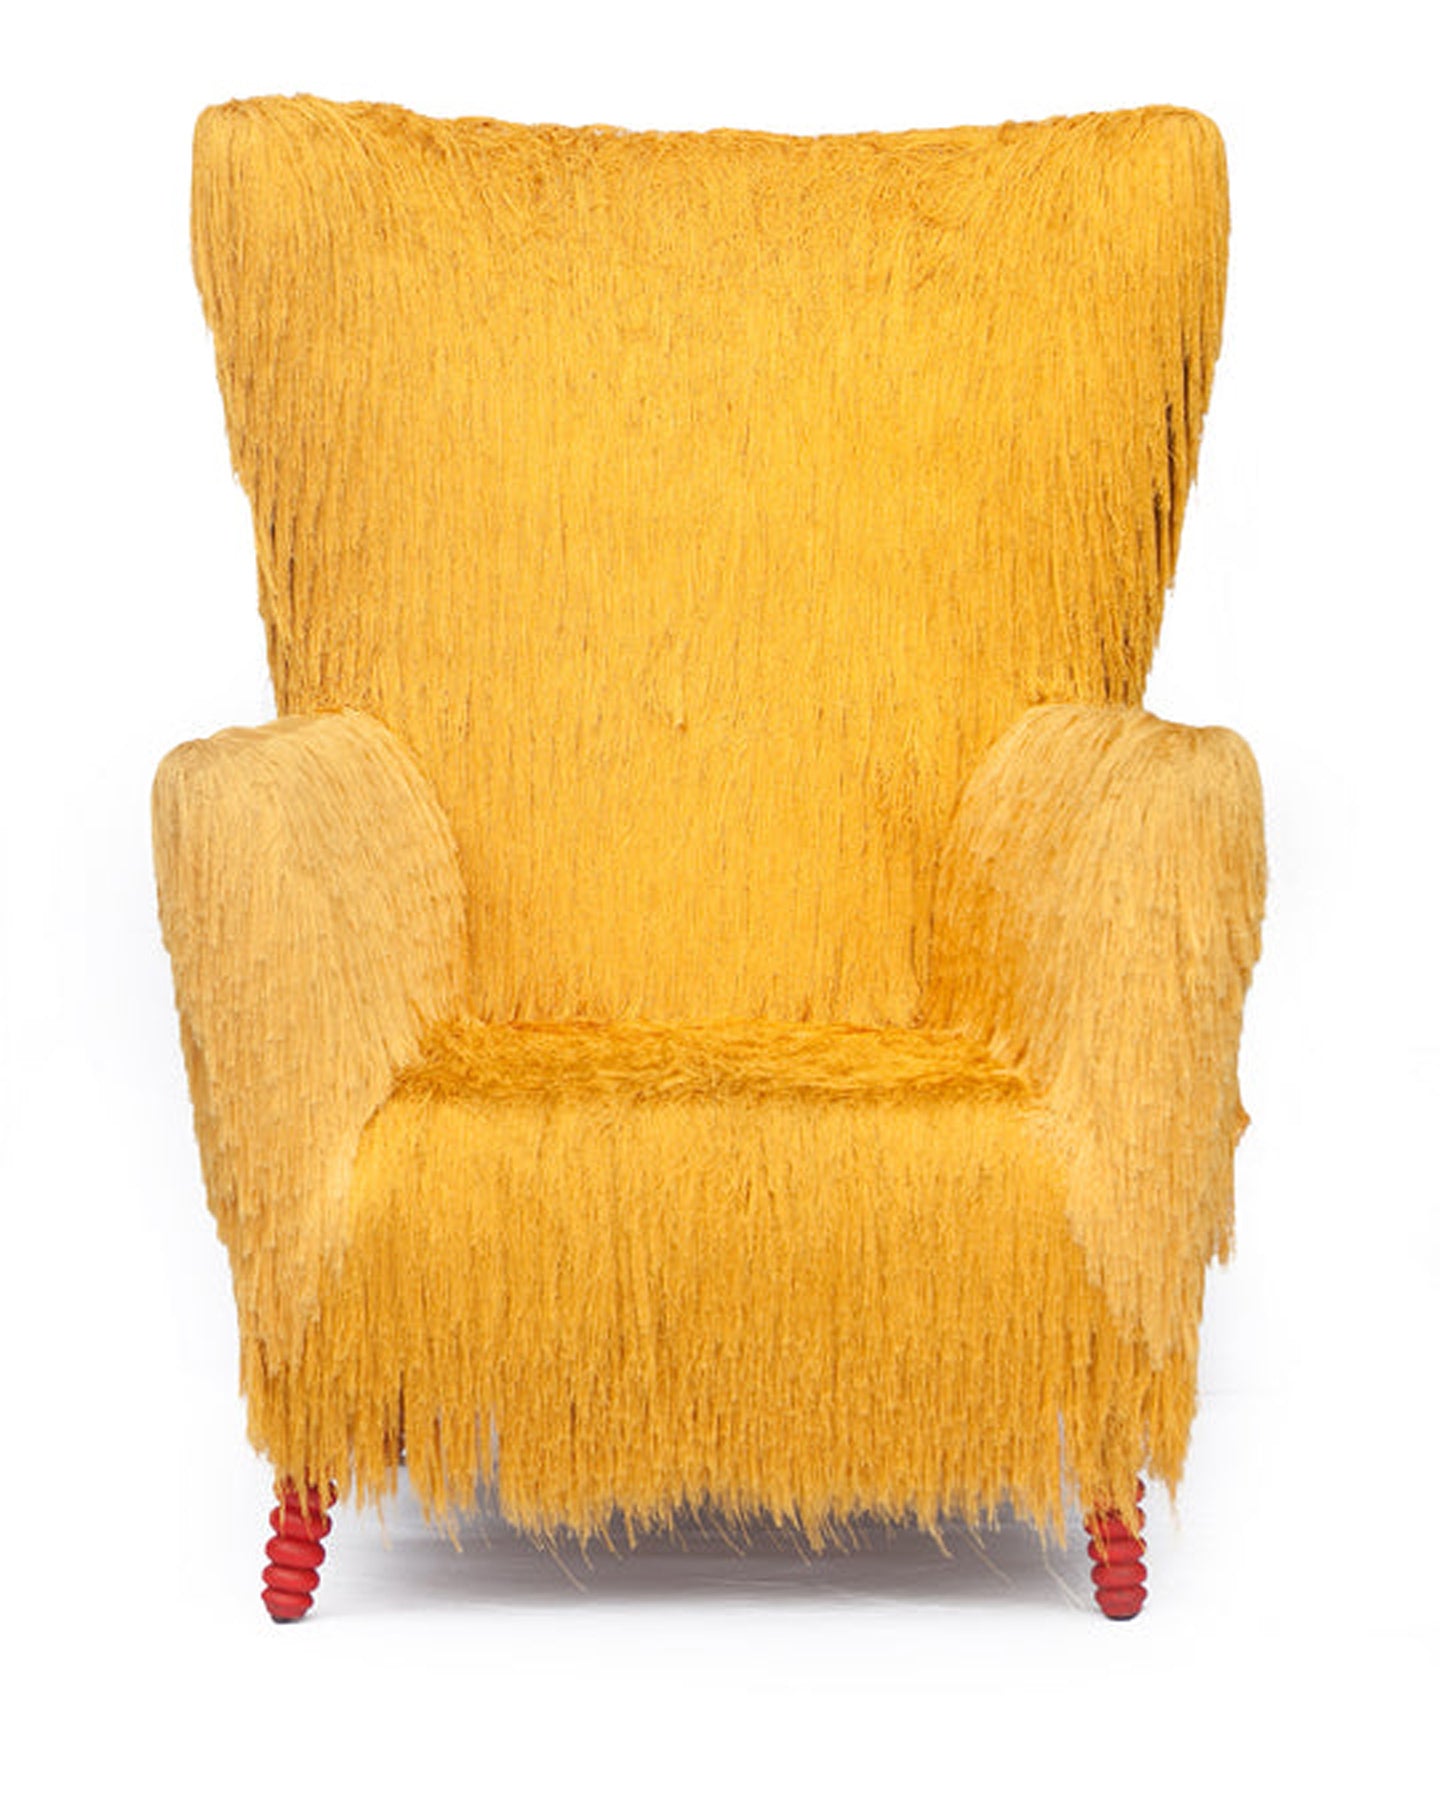 Mmanwu Chair